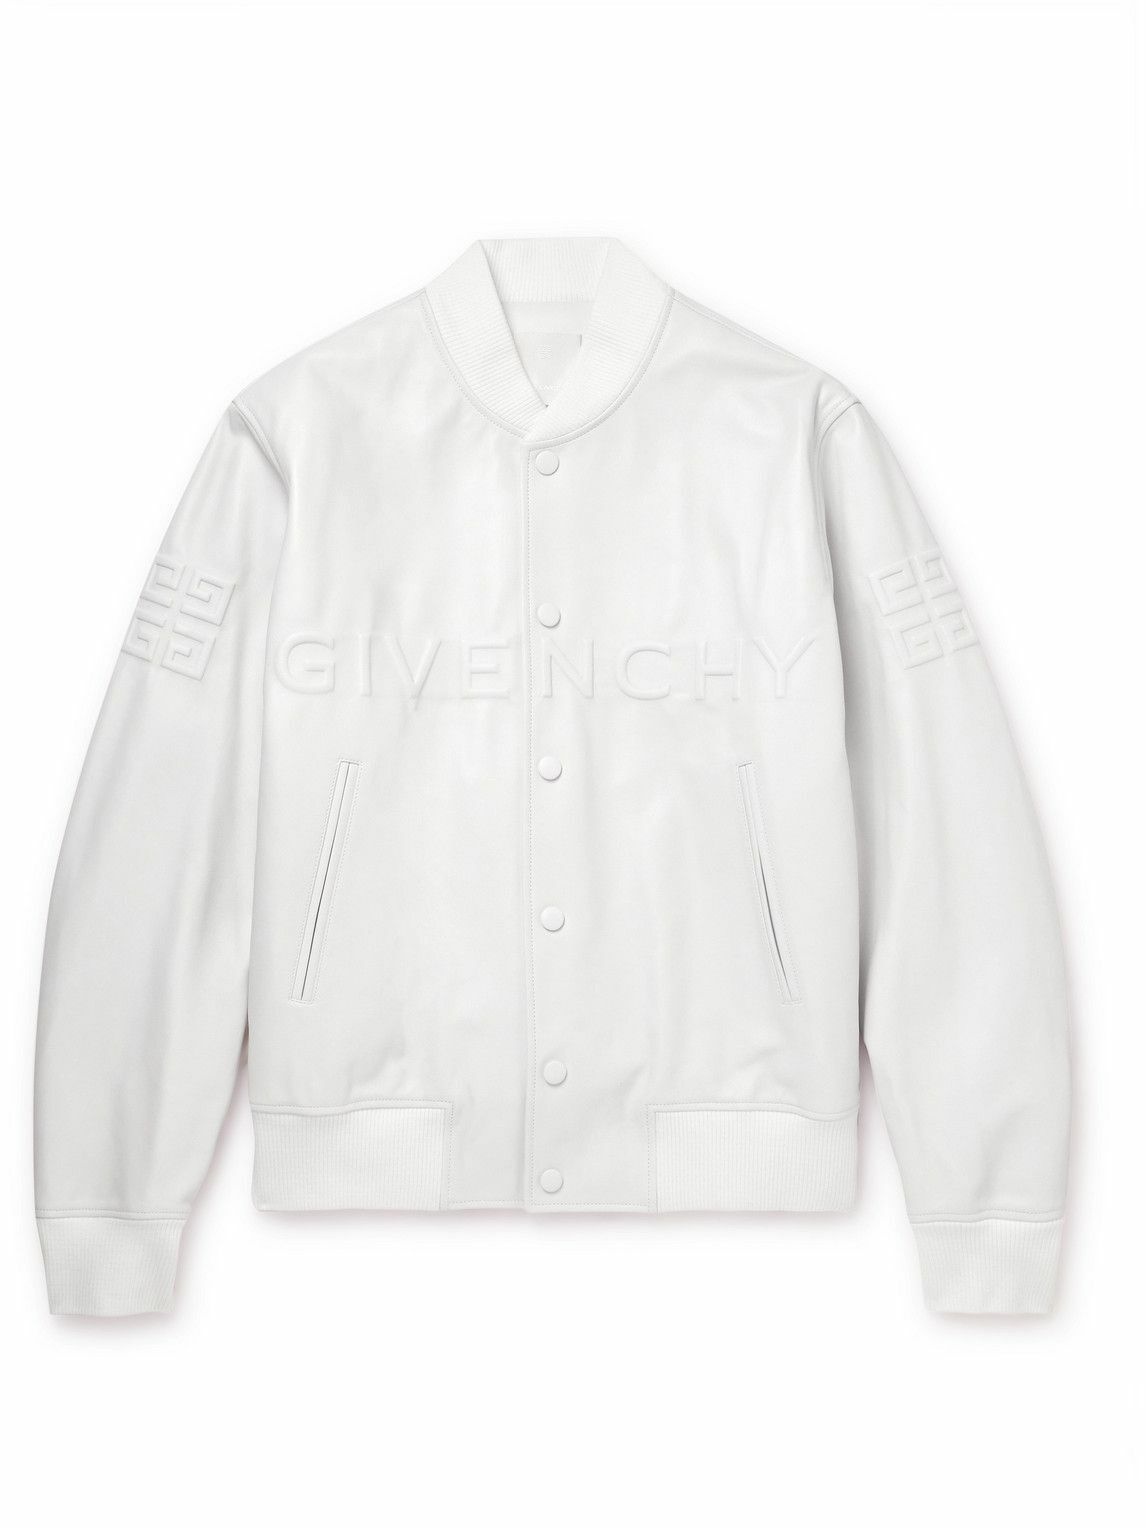 Givenchy - Logo-Embossed Leather Hooded Varsity Jacket - White Givenchy